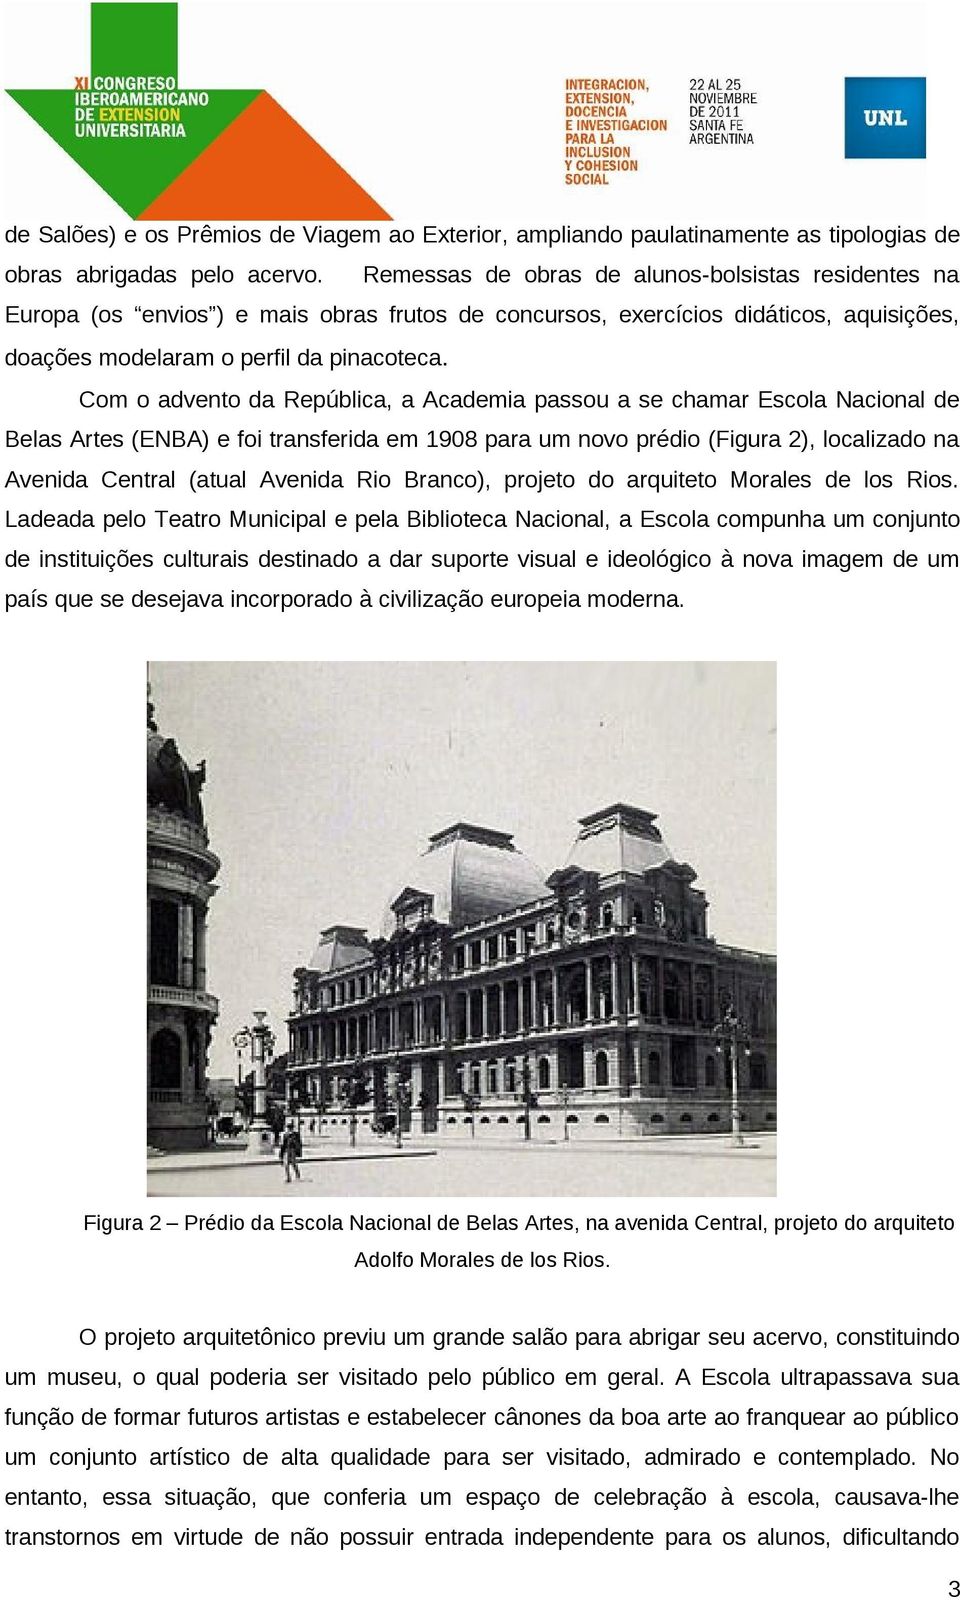 Com o advento da República, a Academia passou a se chamar Escola Nacional de Belas Artes (ENBA) e foi transferida em 1908 para um novo prédio (Figura 2), localizado na Avenida Central (atual Avenida